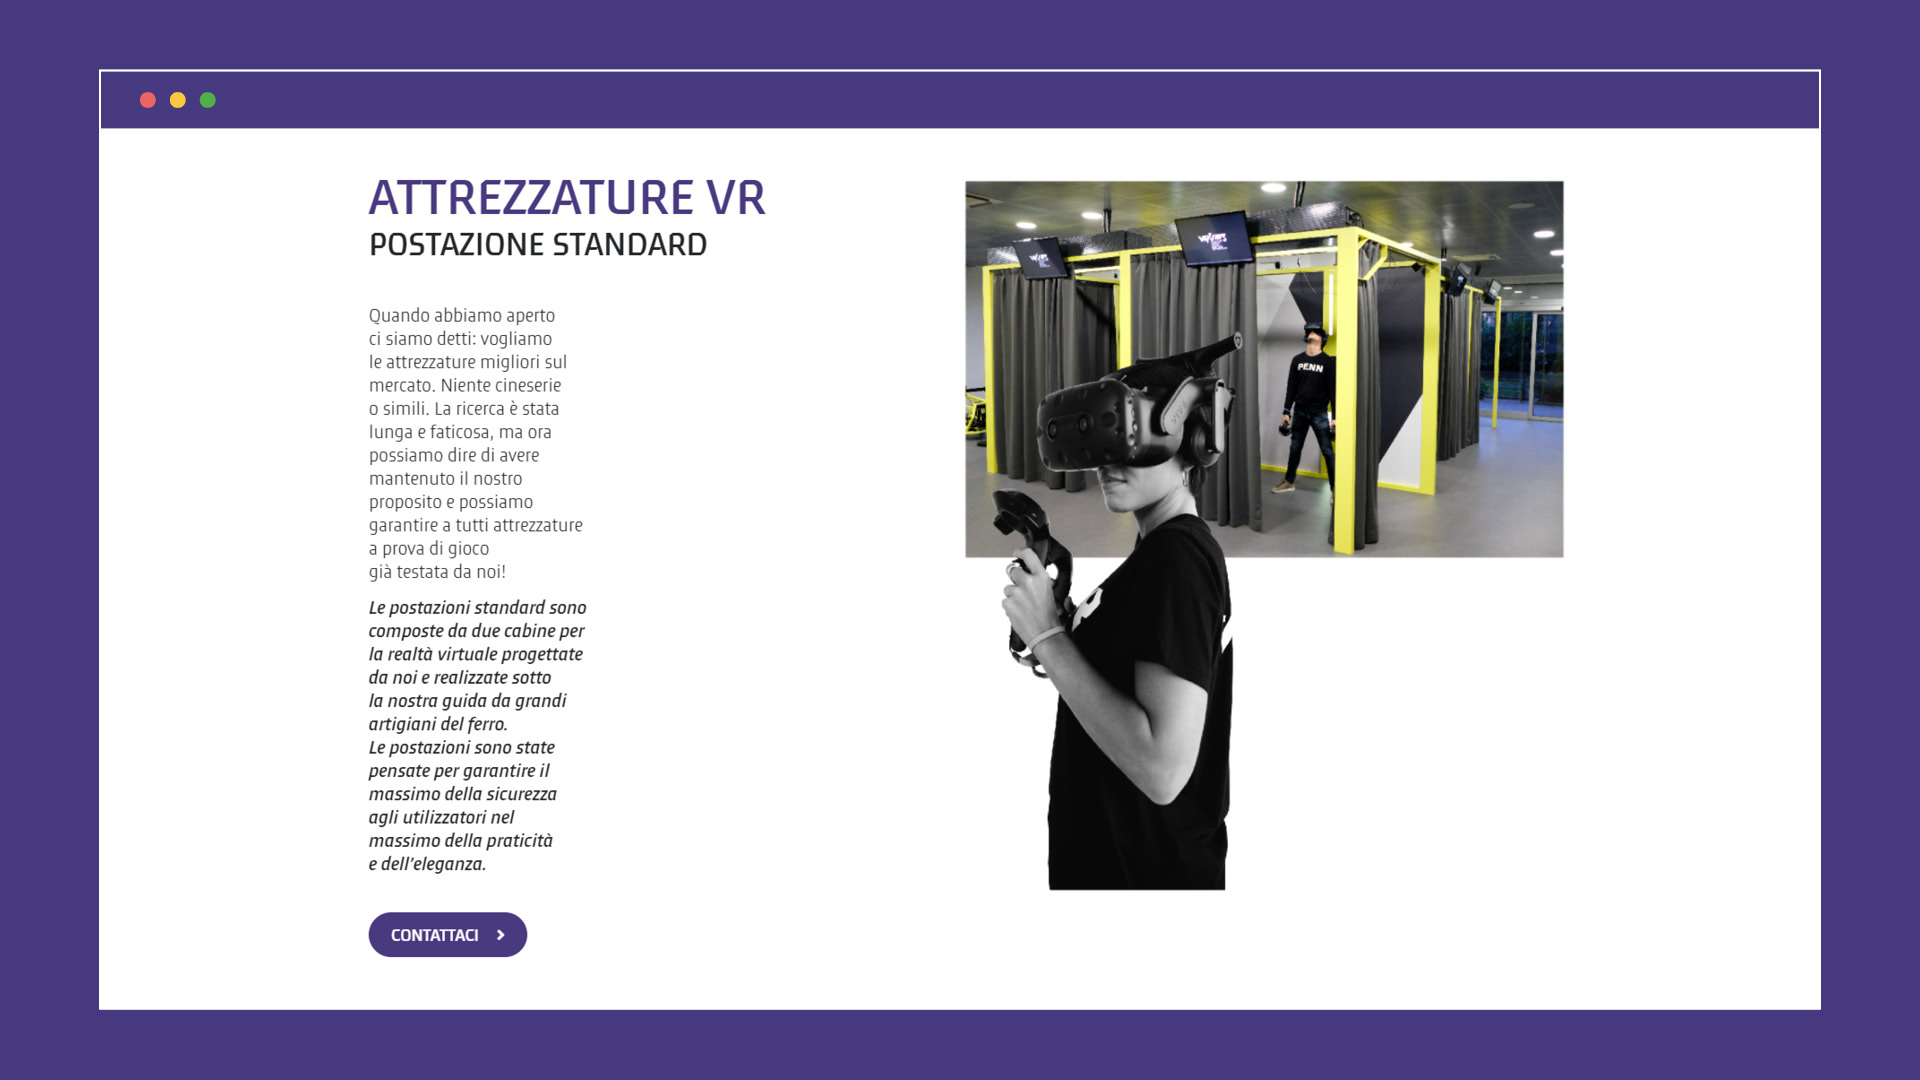 Sito web - Sala giochi VR